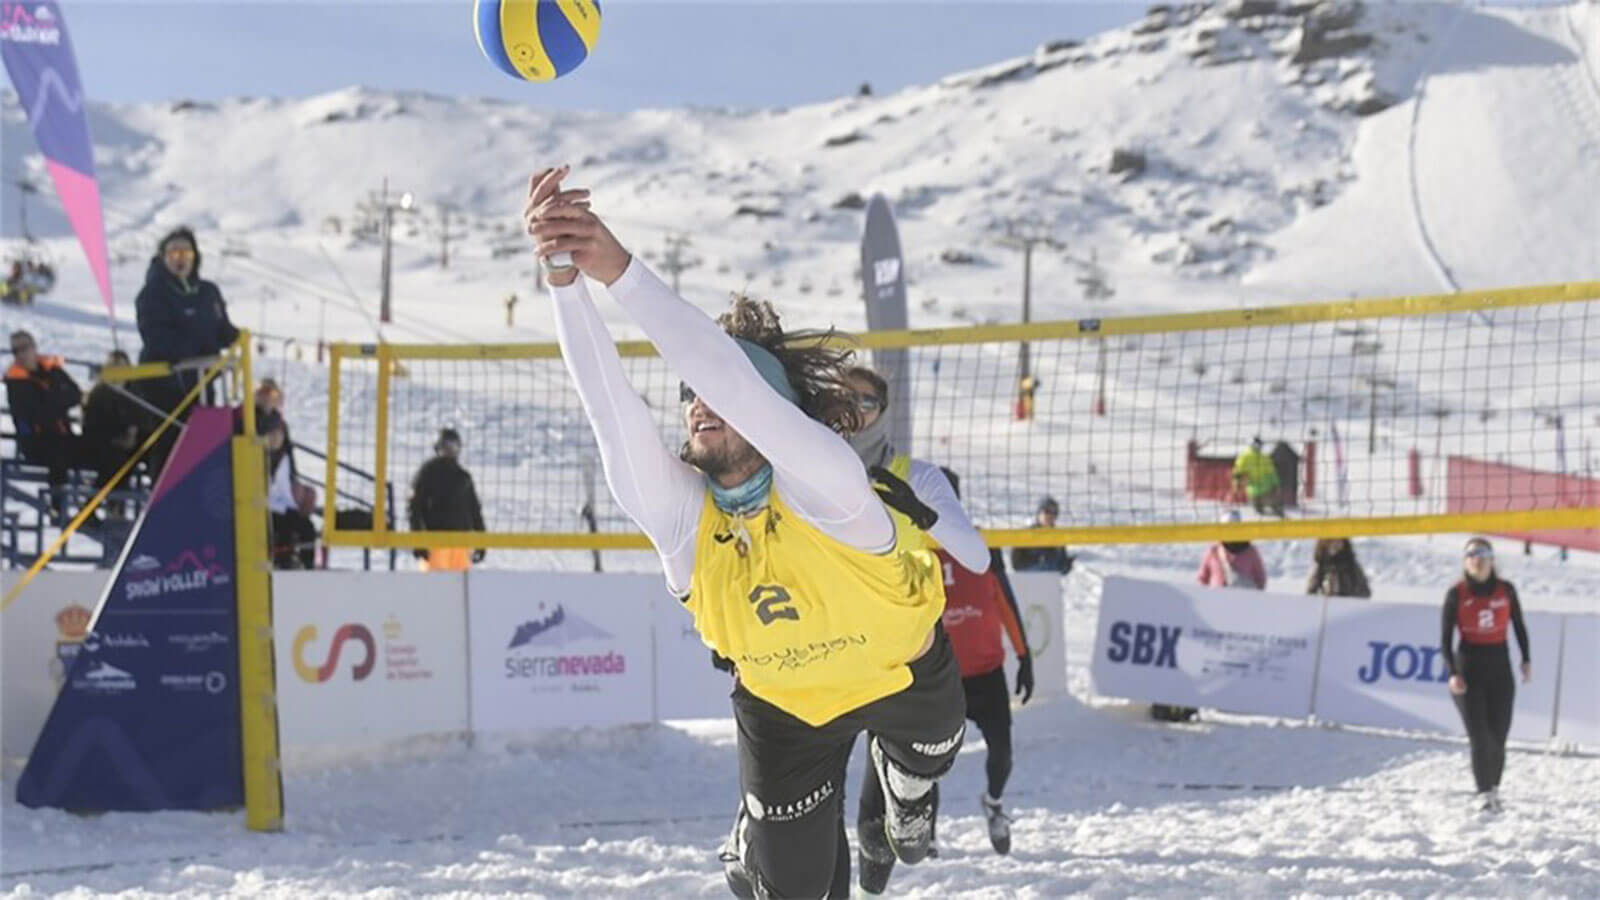 İspanya Voleybol Federasyonun Kar Voleybolu Turnuvası Dikkat Çekti